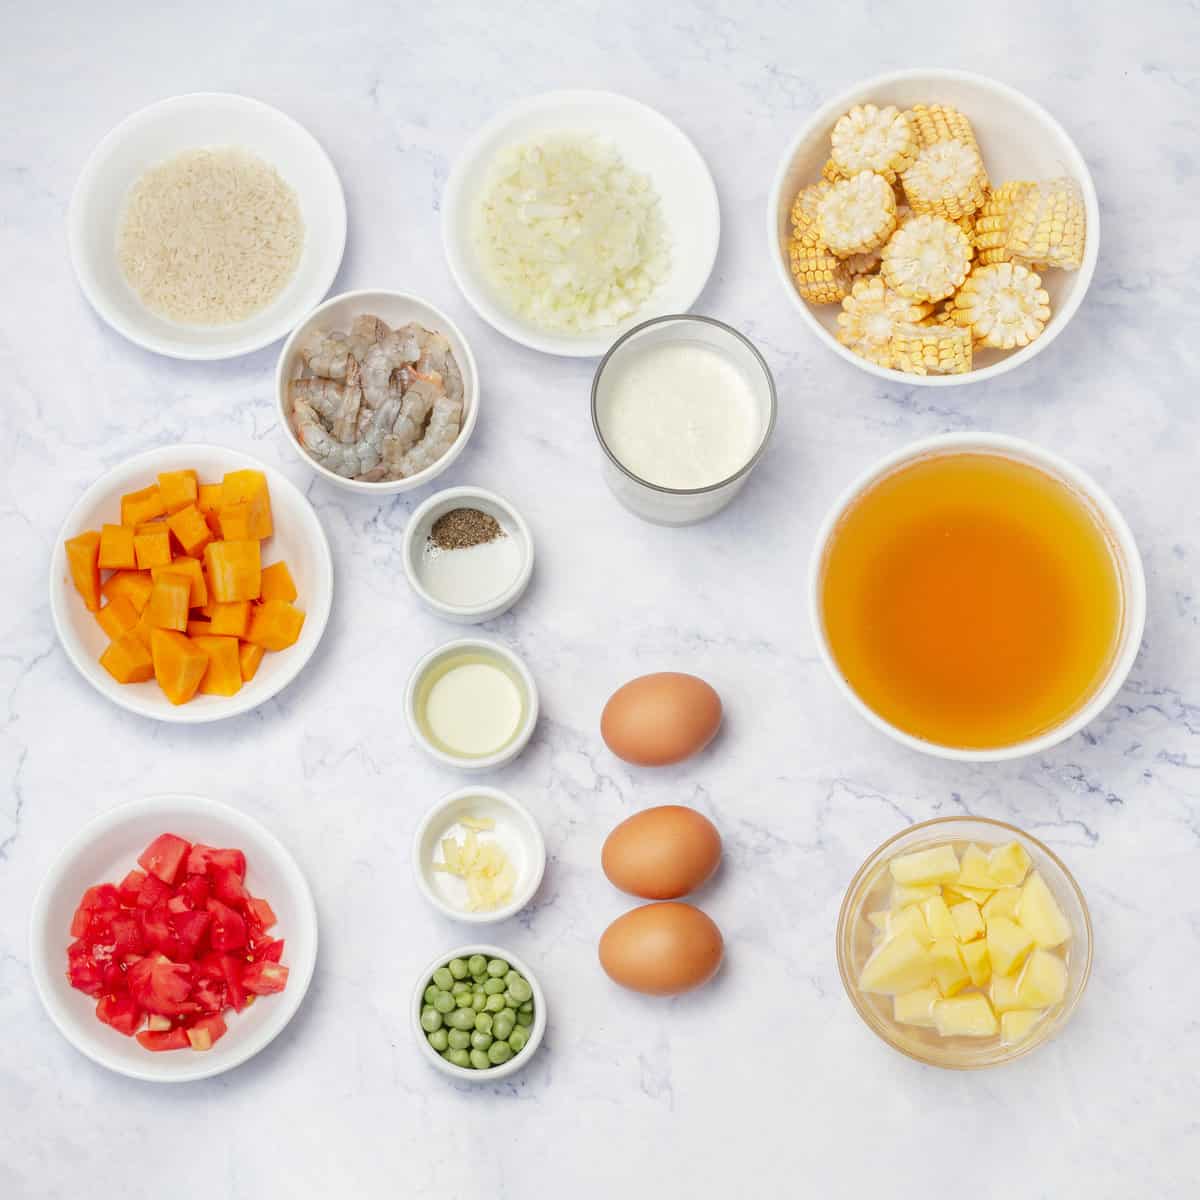 Chupe de Camarones Ingredients